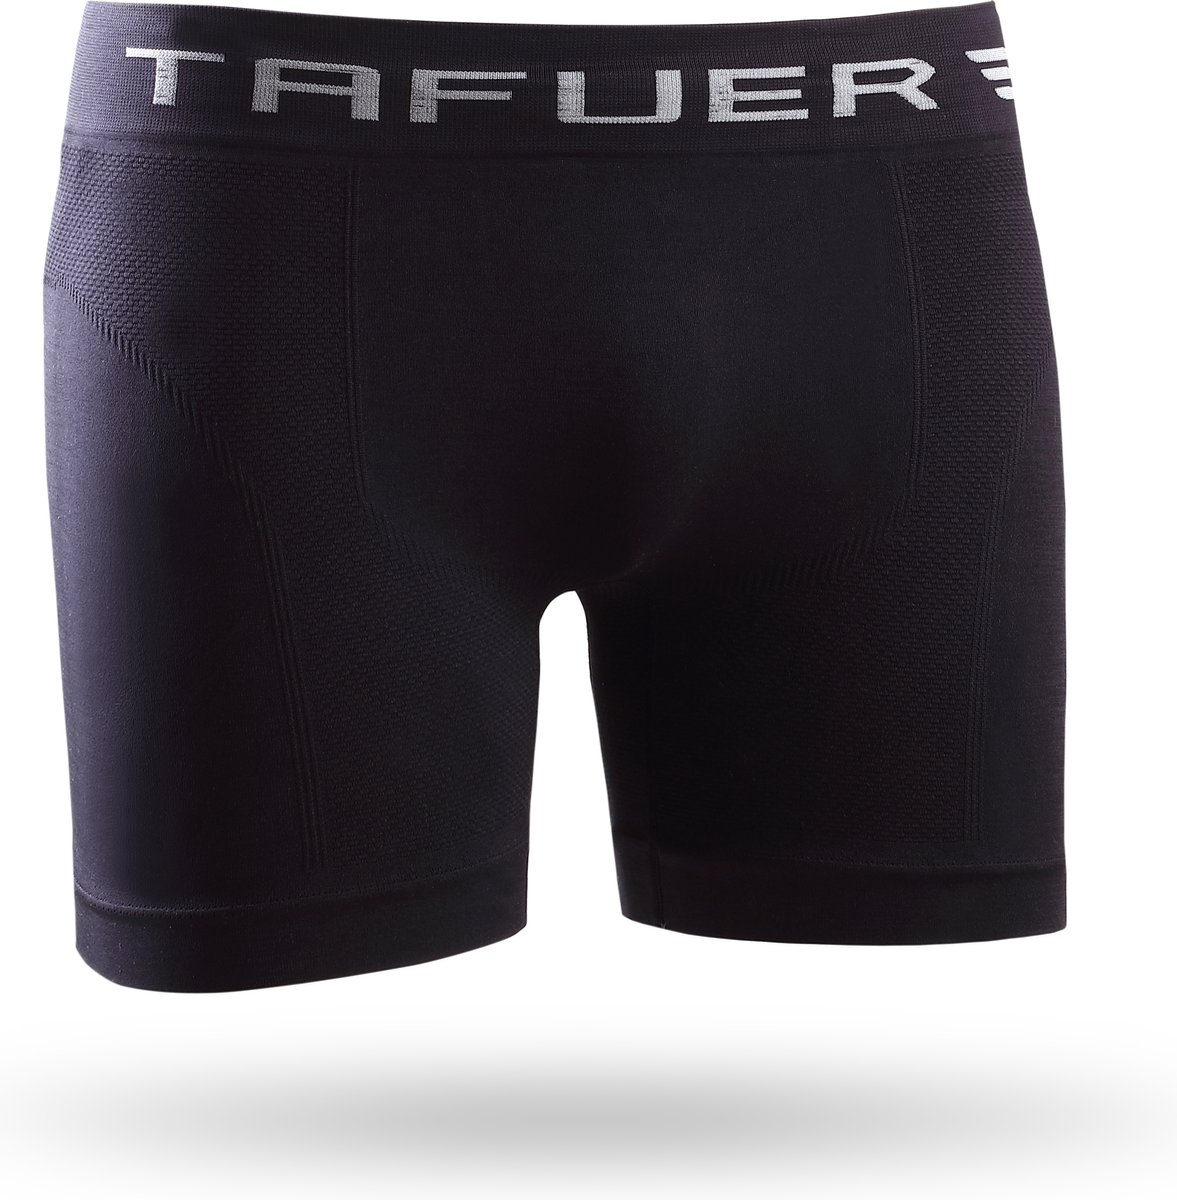 TAFUER - Naadloos Heren Ondergoed - Onderbroeken Heren - Zwart - Maat - M/L - 1 Stuk